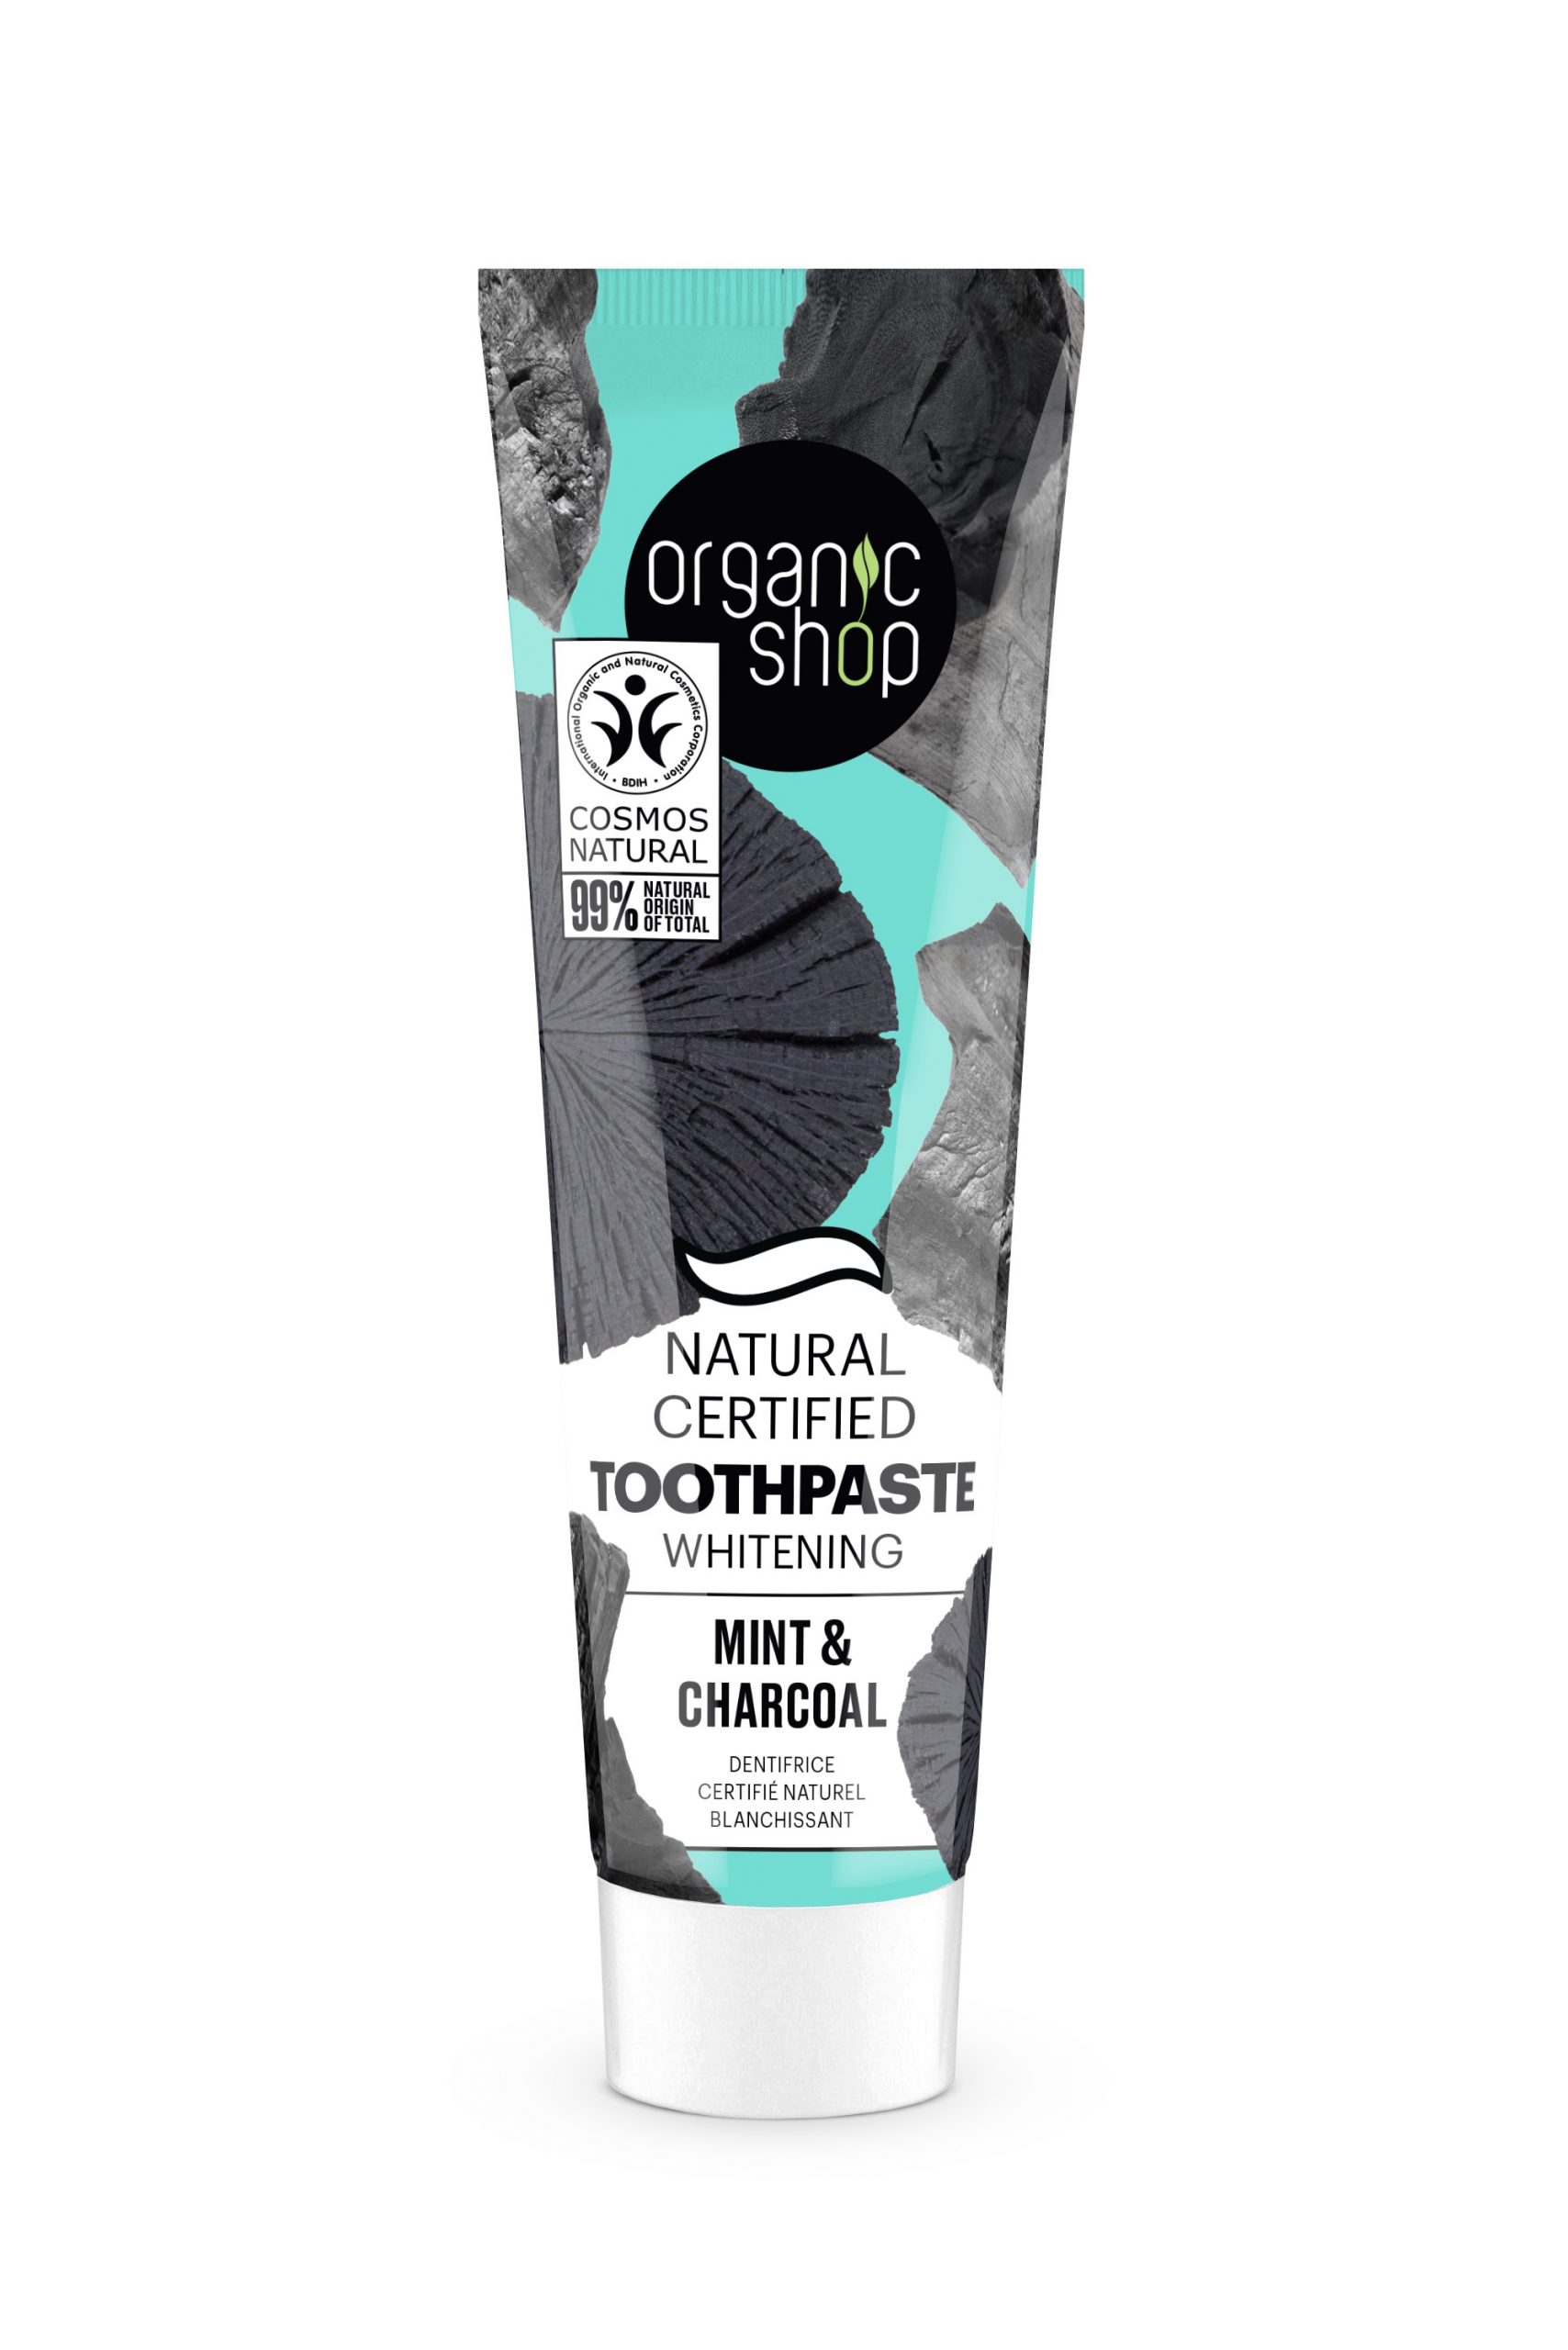 ORGANIC SHOP - Pasta de dientes Blanqueante certificada Carbon y Menta 100 G 3